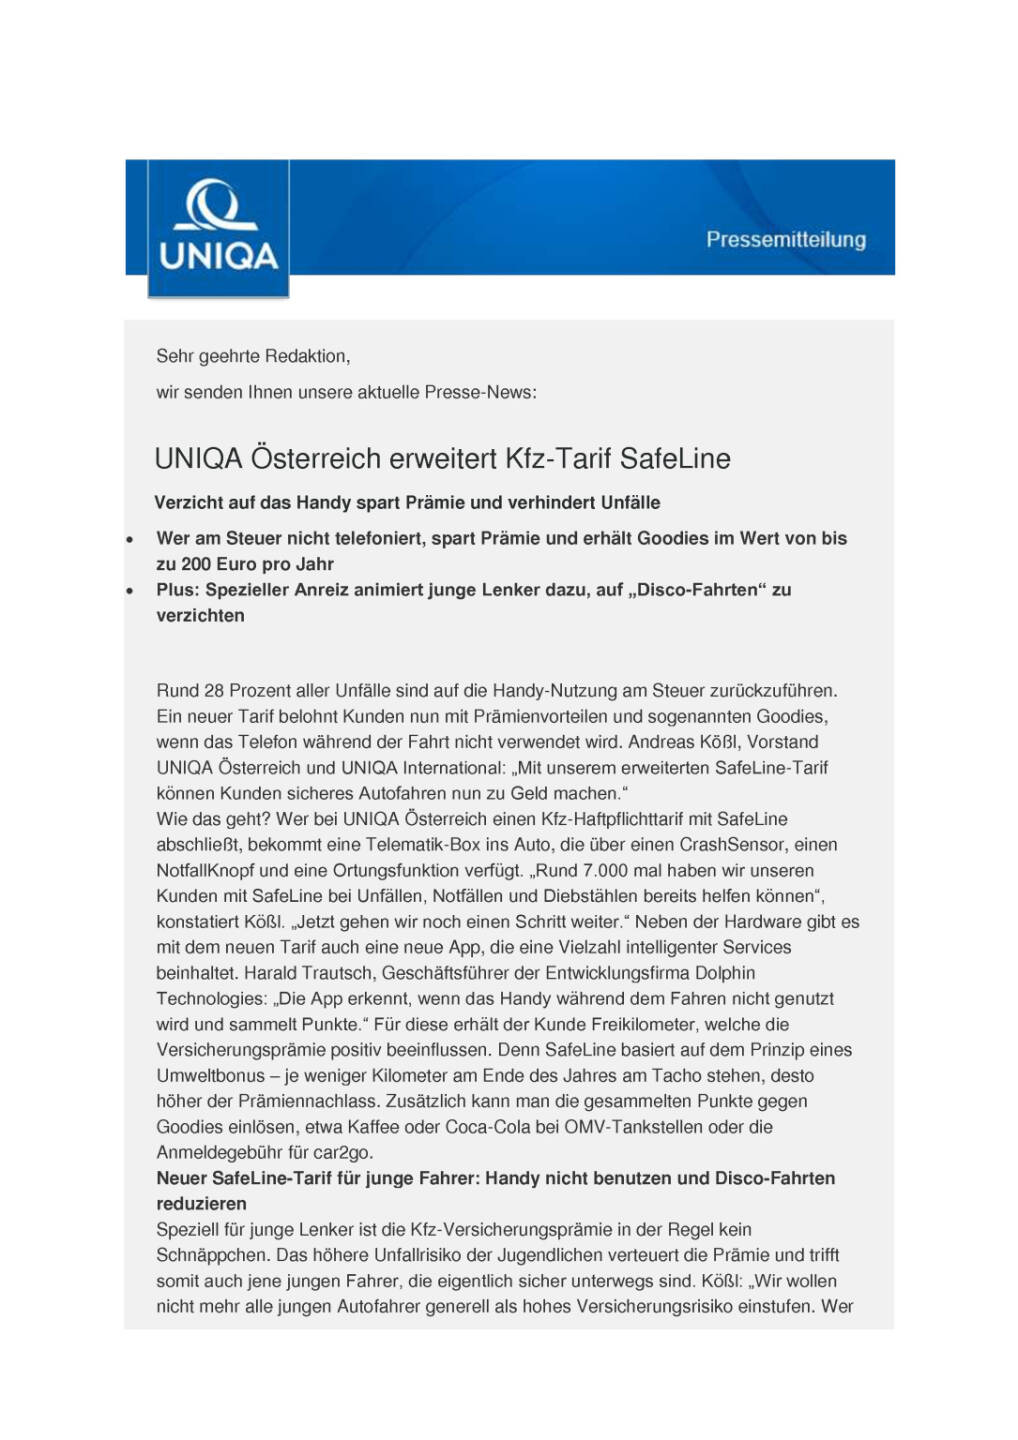 Uniqa Österreich erweitert Kfz-Tarif SafeLine, Seite 1/3, komplettes Dokument unter http://boerse-social.com/static/uploads/file_1156_uniqa_osterreich_erweitert_kfz-tarif_safeline.pdf